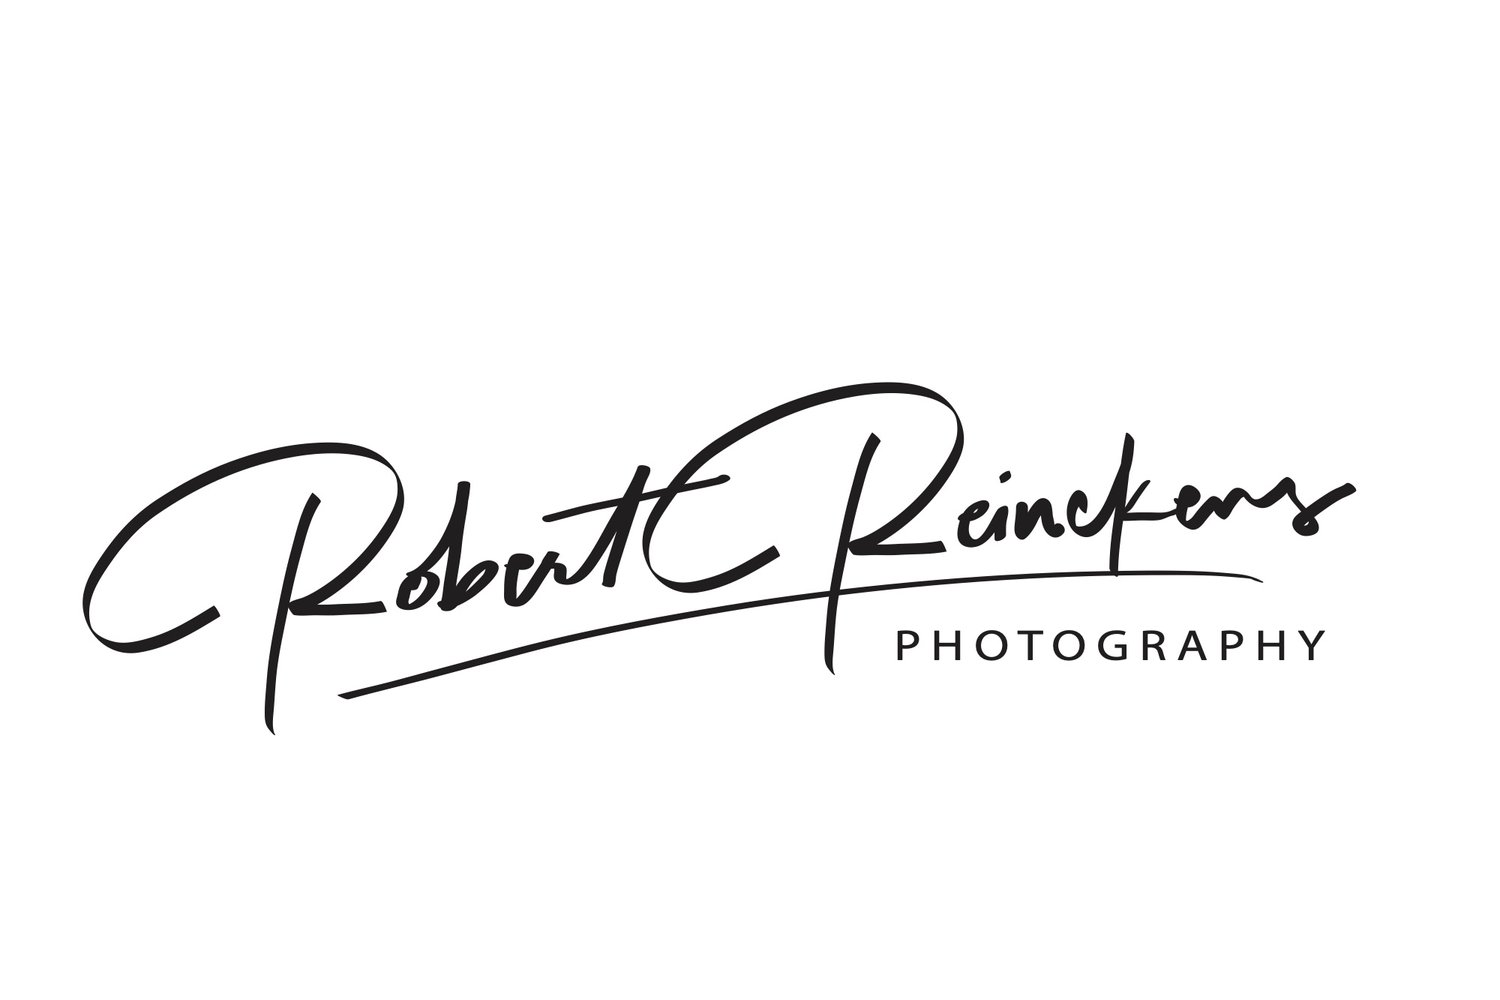 Robert Reinckens Photography